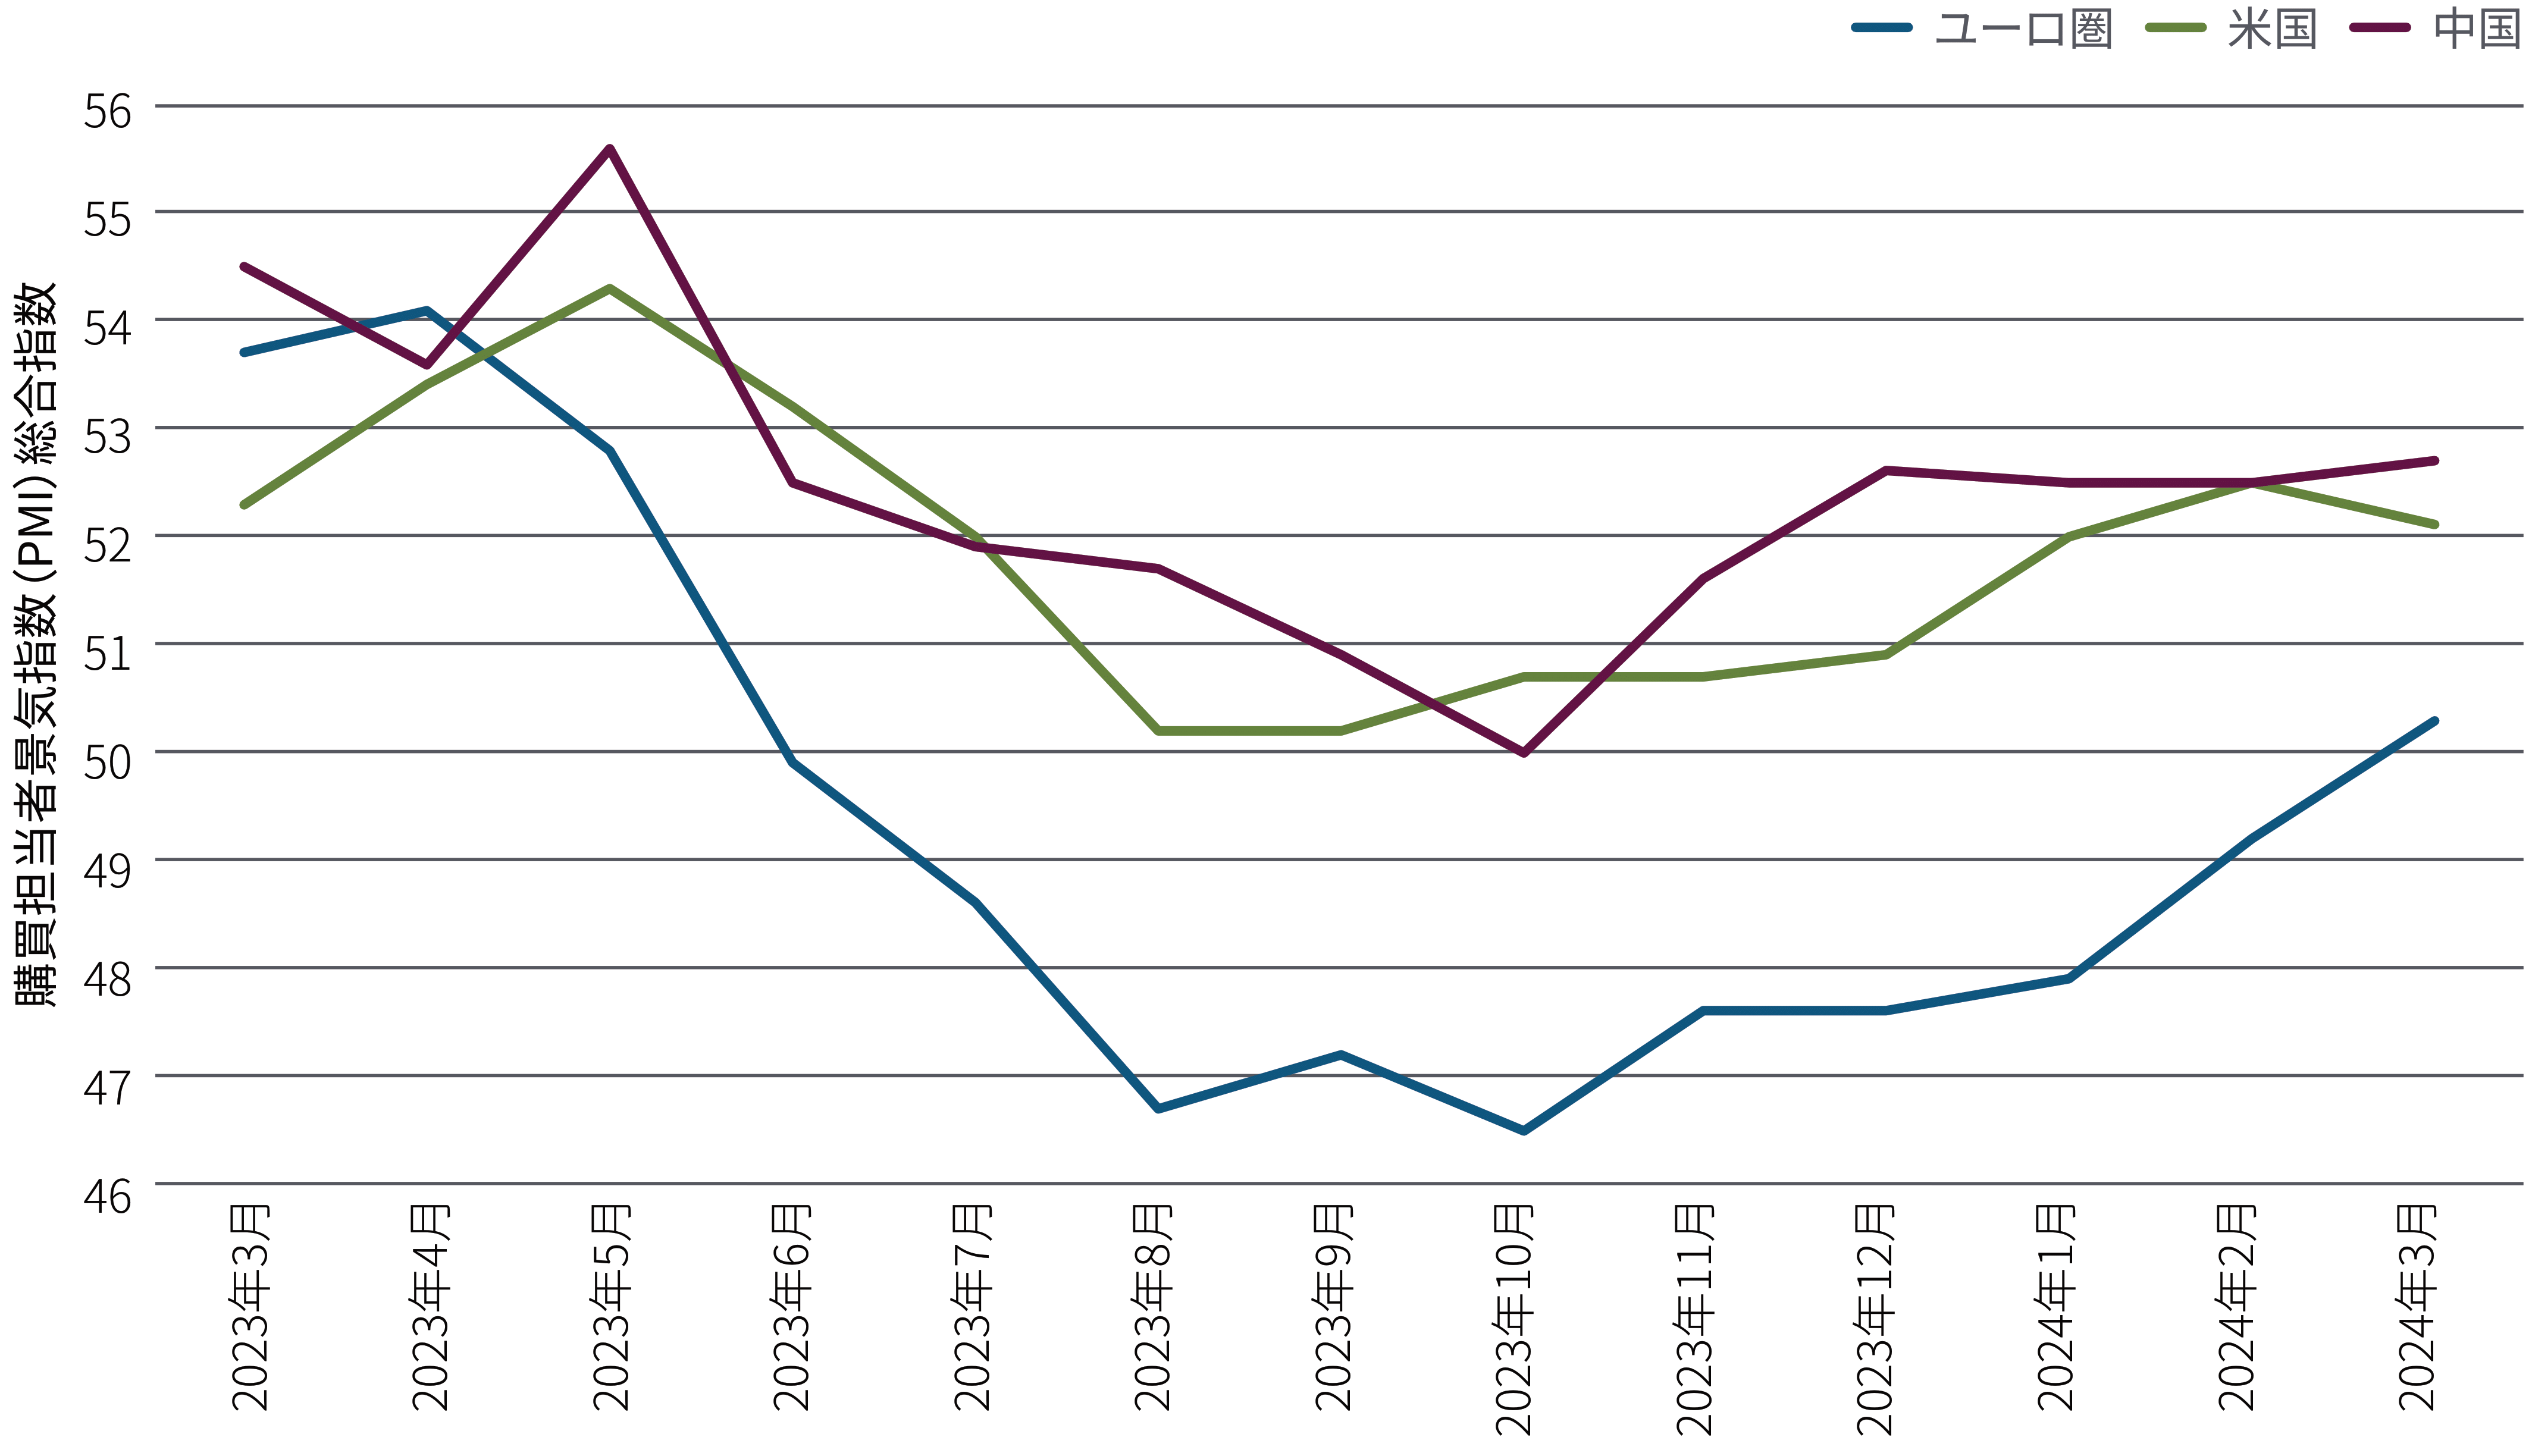 図表1の折れ線グラフは、2023年3月から2024年3月までの米国、中国、ユーロ圏の購買担当者景気指数の総合指数を、月次データで示しています。この間、すべての国・地域の指数は2023年4月または5月にピークを迎えた後、低下に転じ、第3四半期に底を打った後、再び上昇しています。2024年3月現在のPMIは、中国が52.7、米国は52.1、ユーロ圏は50.3となっています（ユーロ圏は2023年に、他の2カ国を大幅に下回る水準で底打ち）。